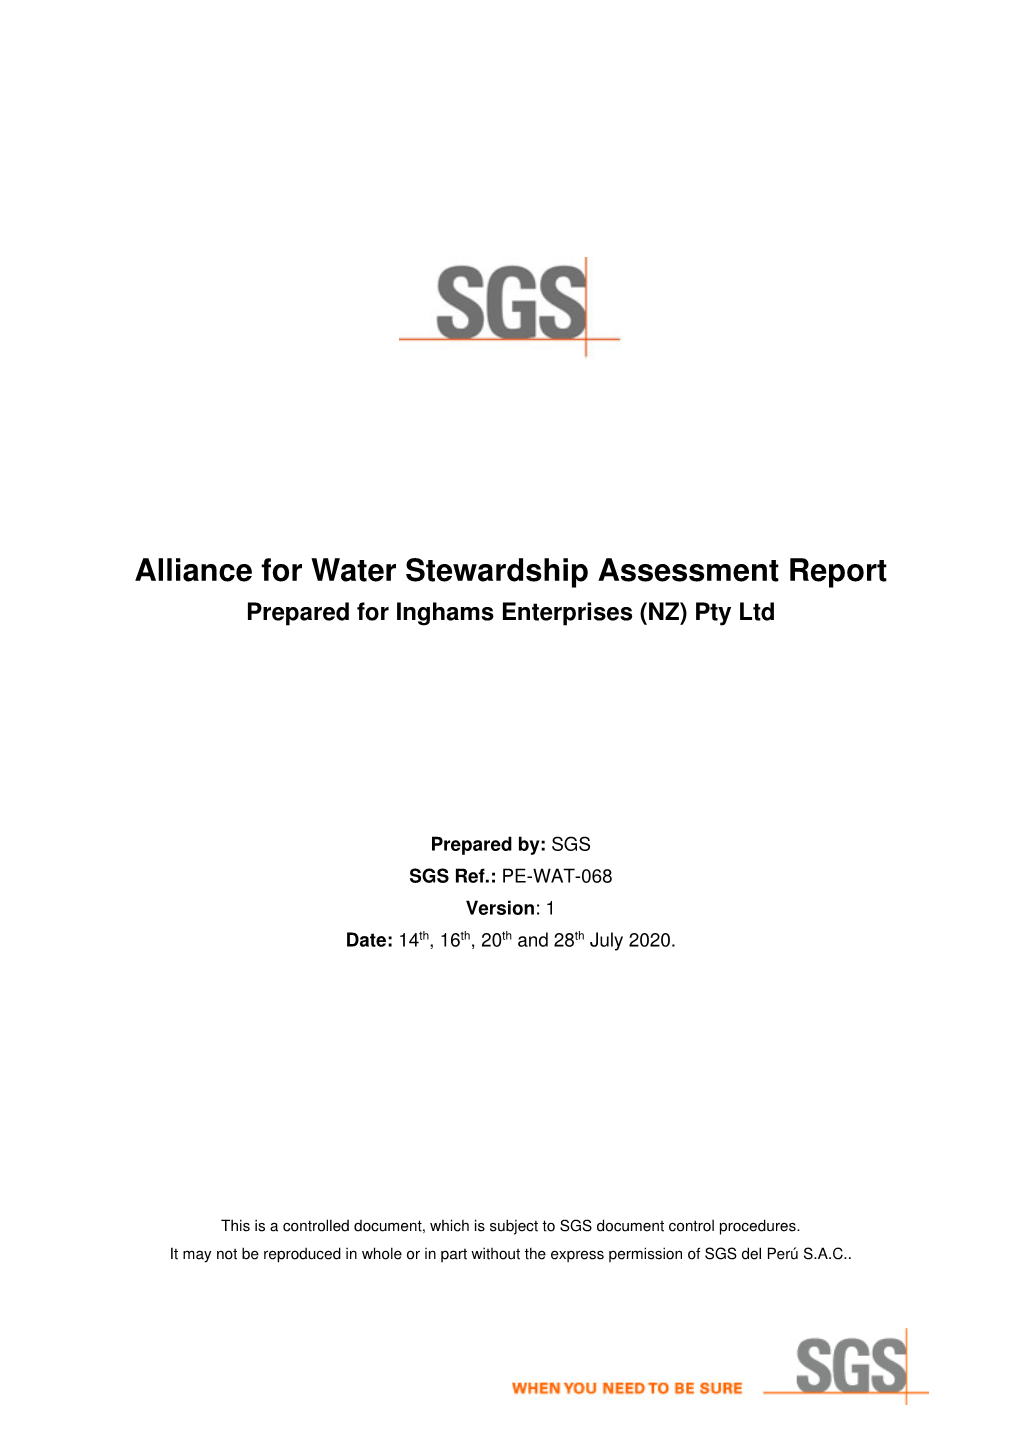 Alliance for Water Stewardship Assessment Report Prepared for Inghams Enterprises (NZ) Pty Ltd